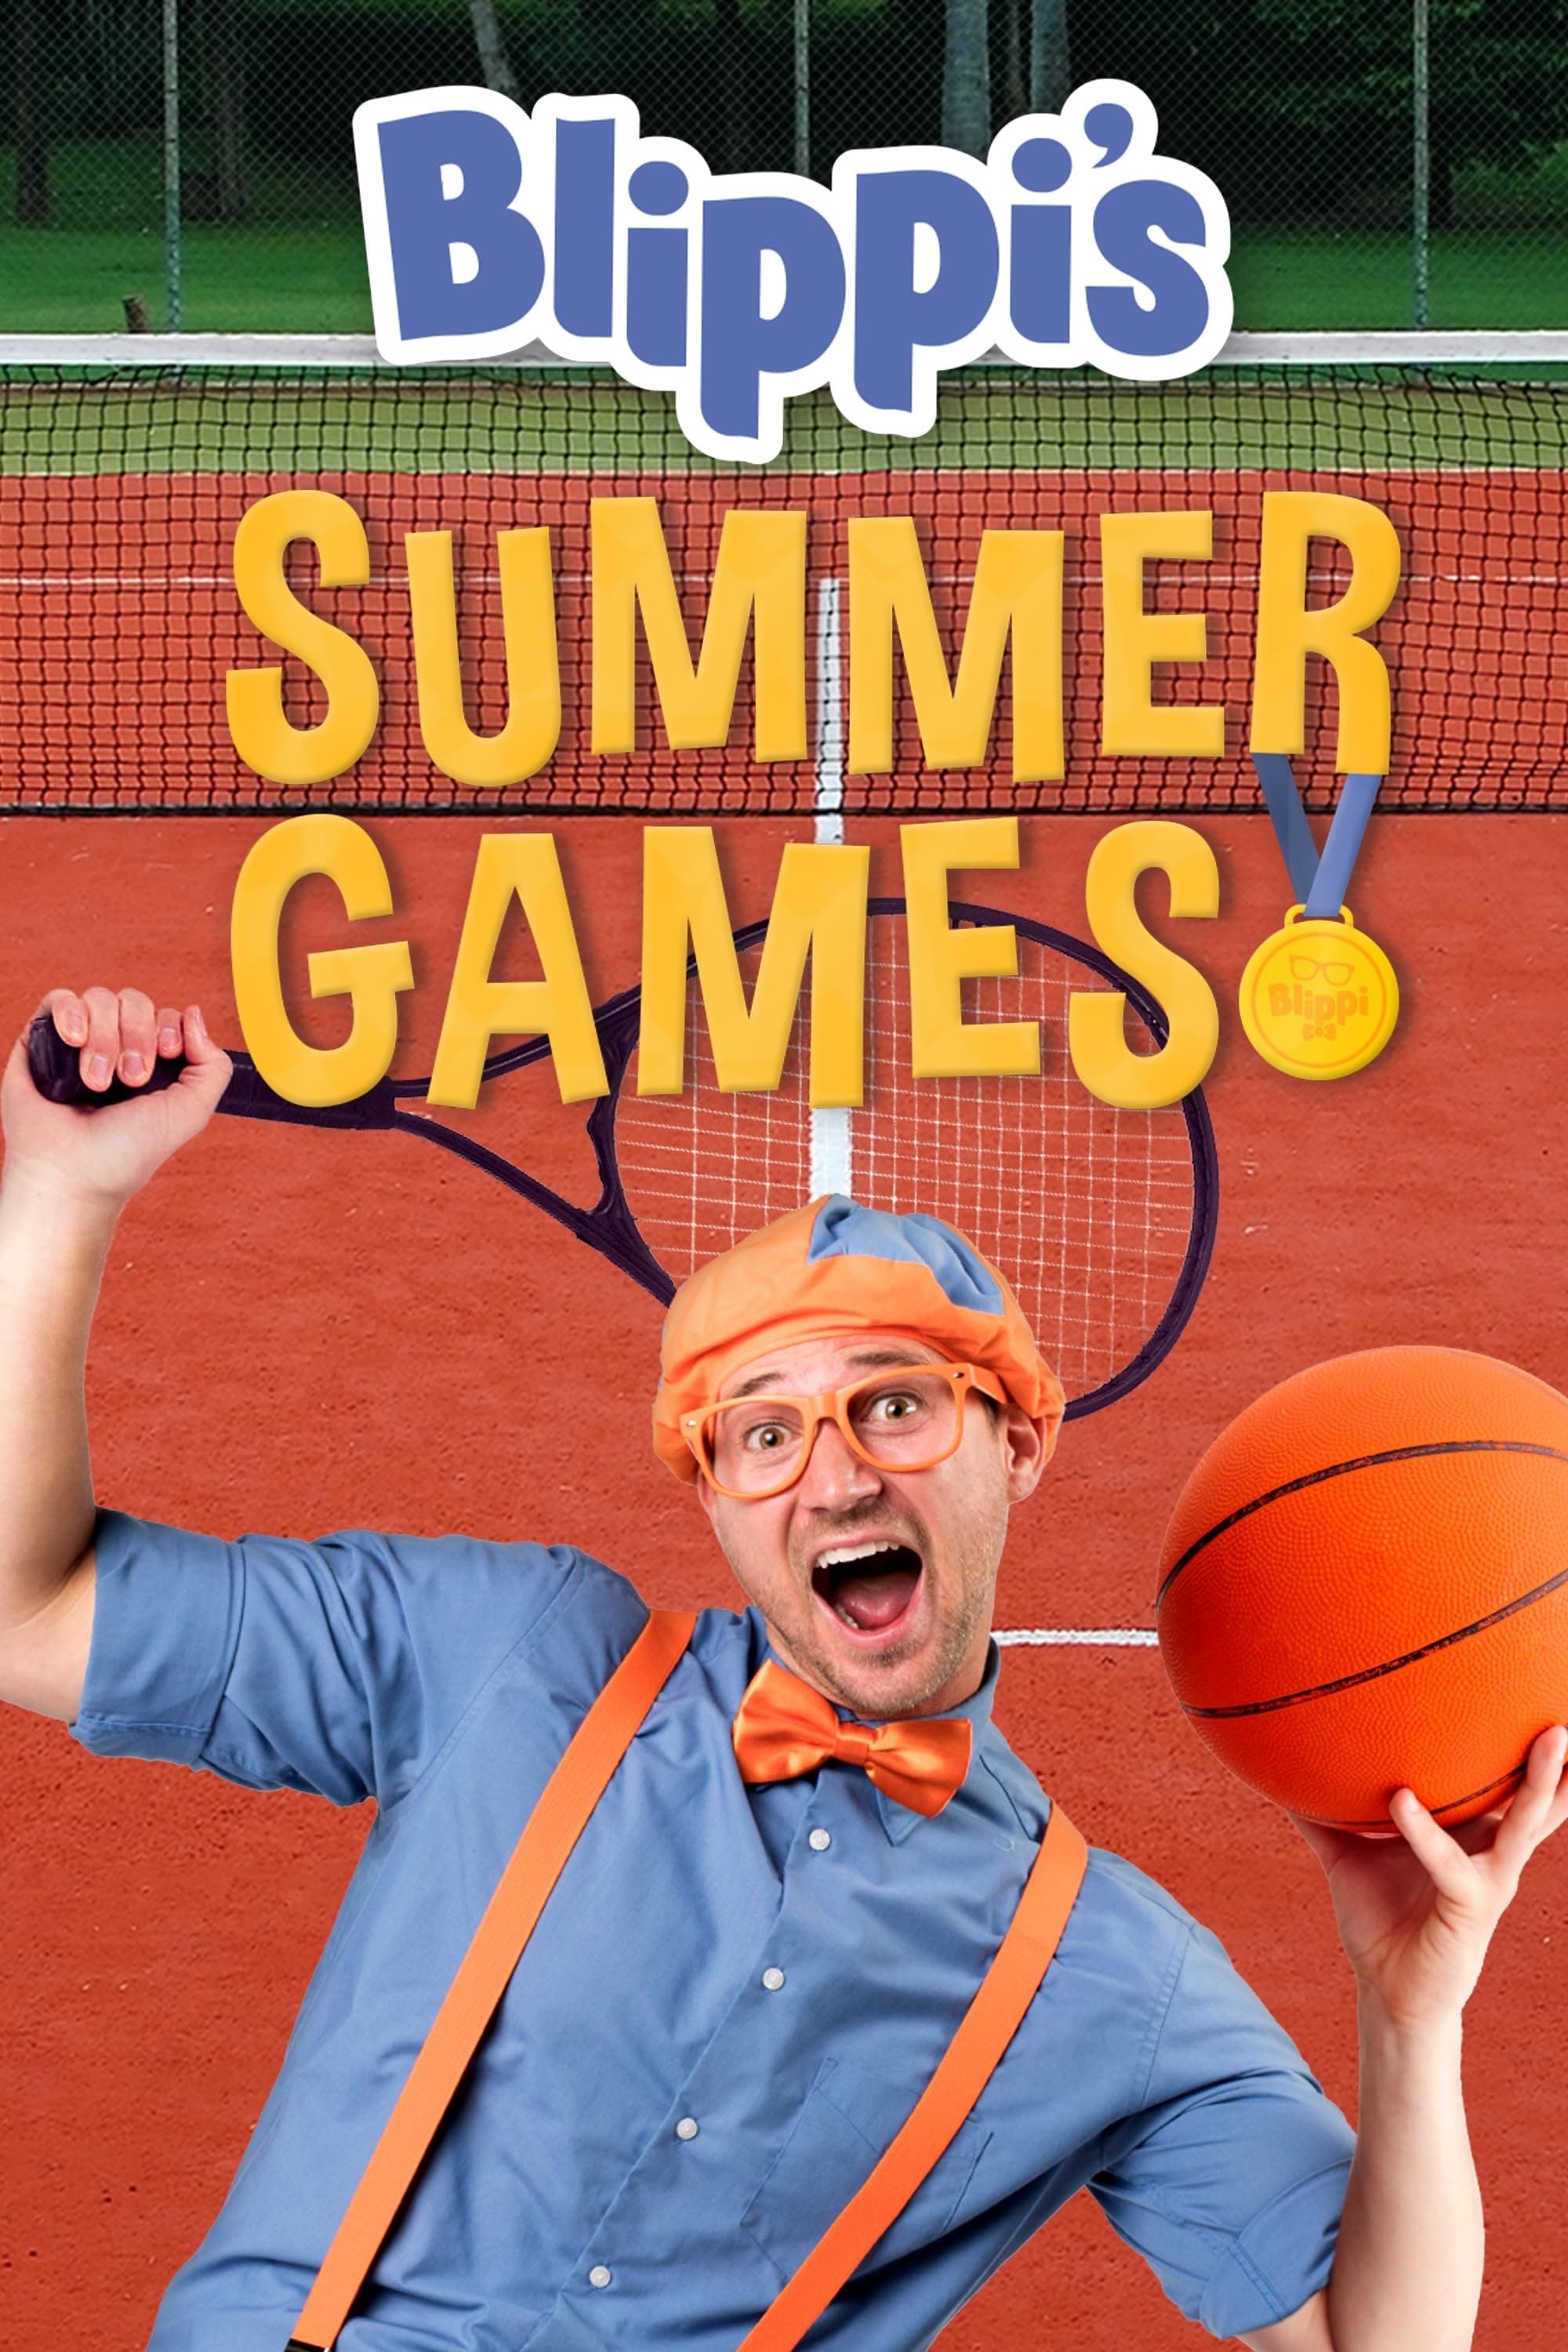 Blippi’s Summer Games